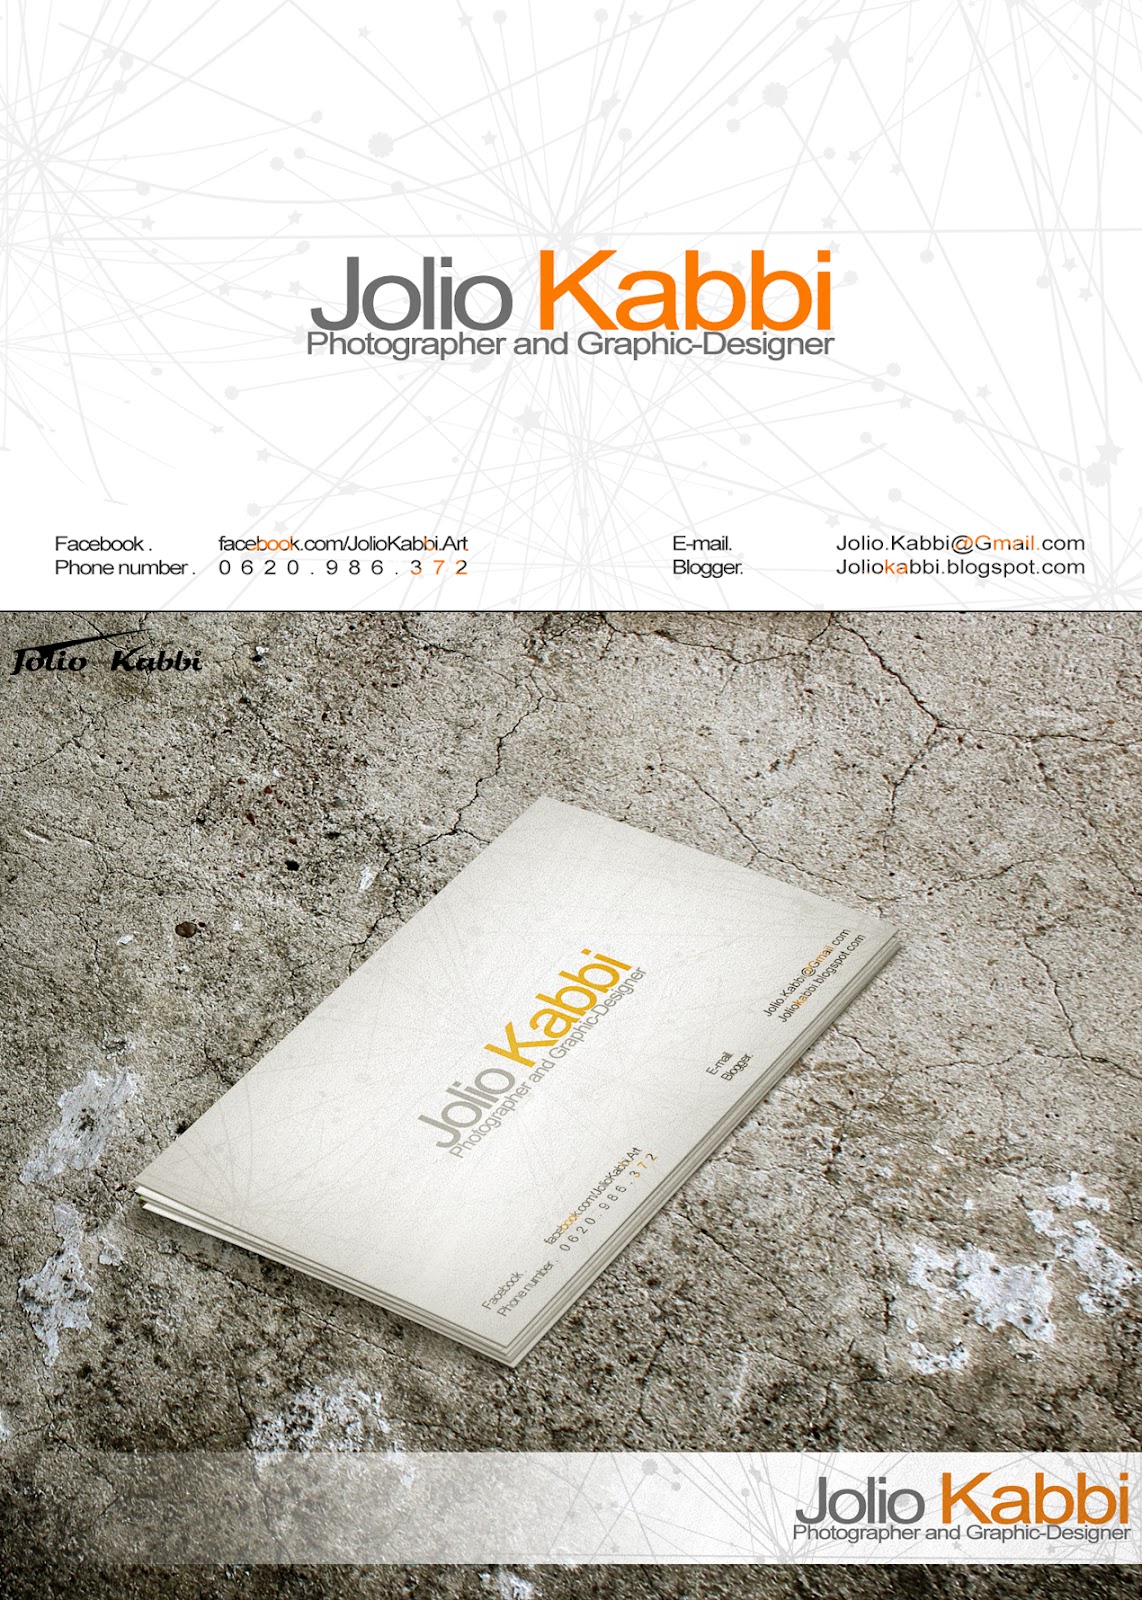 Jolio Kabbi business card